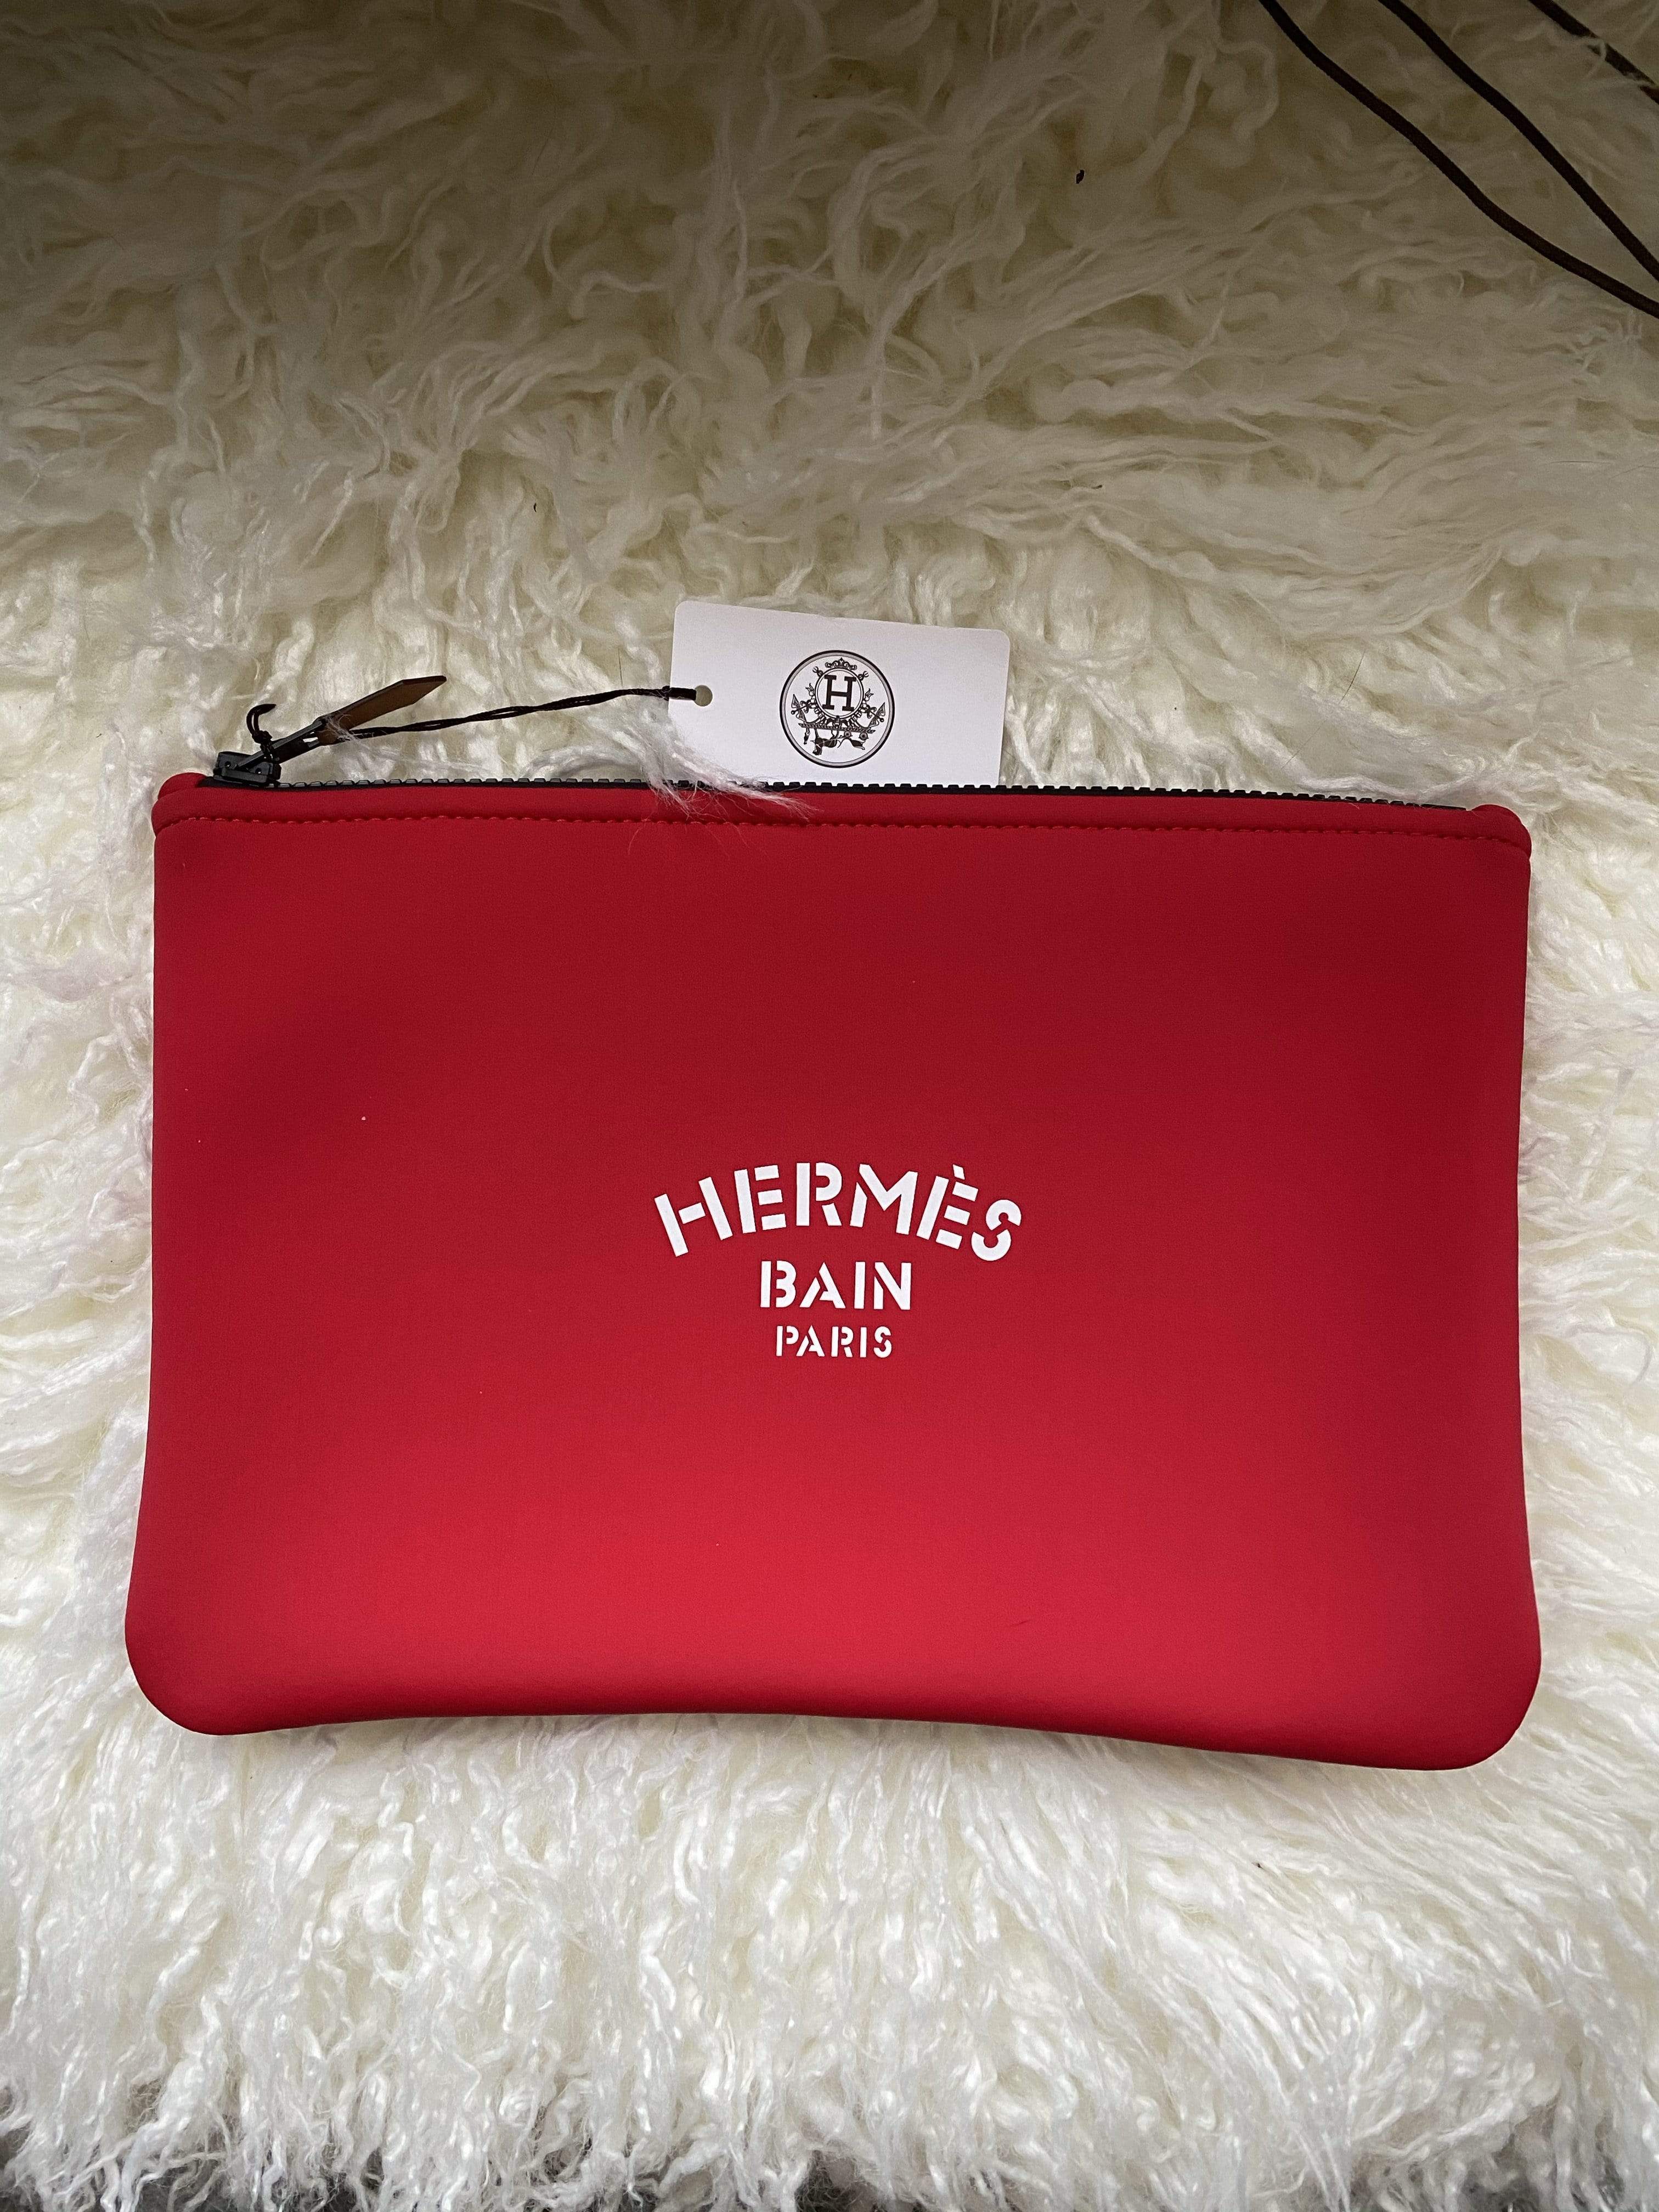 Hermès Hermes Bain Paris pouch red